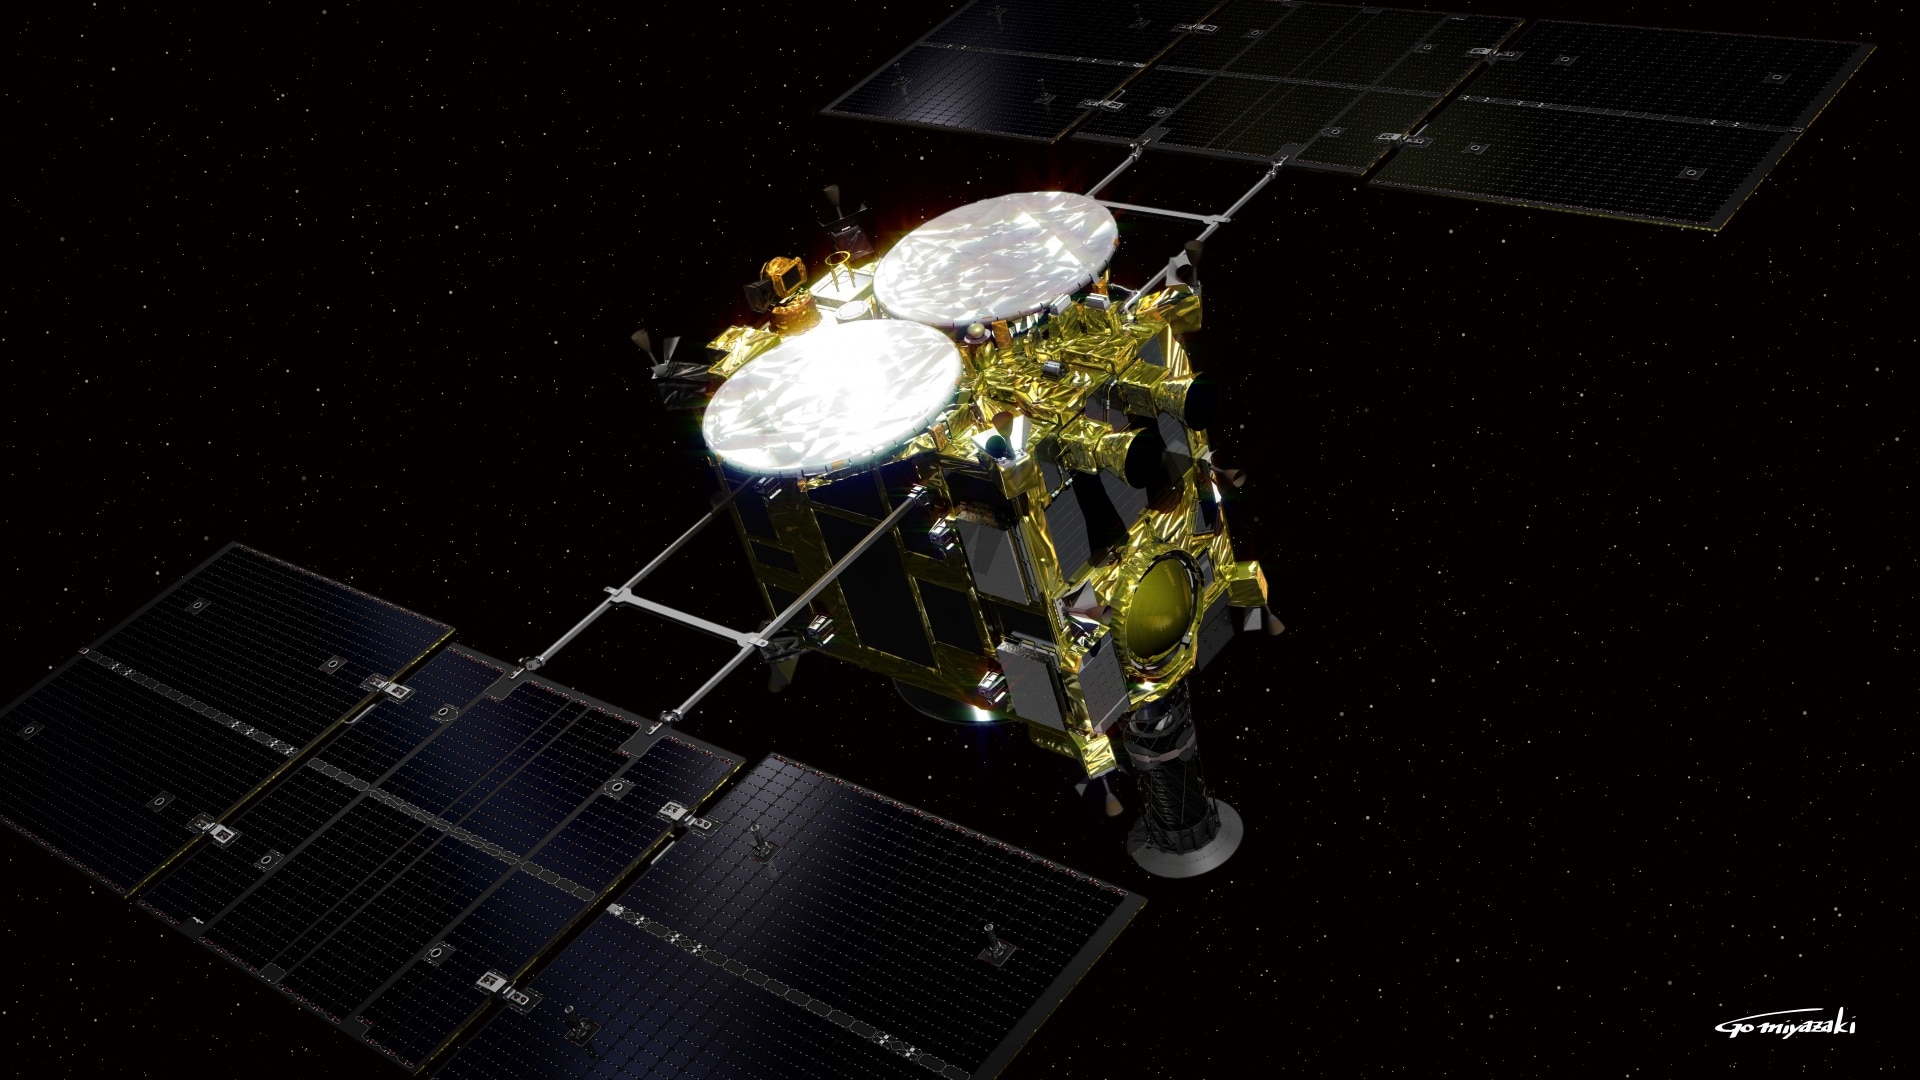 Hayabusa2 entra en la órbita del asteroide Ryugu